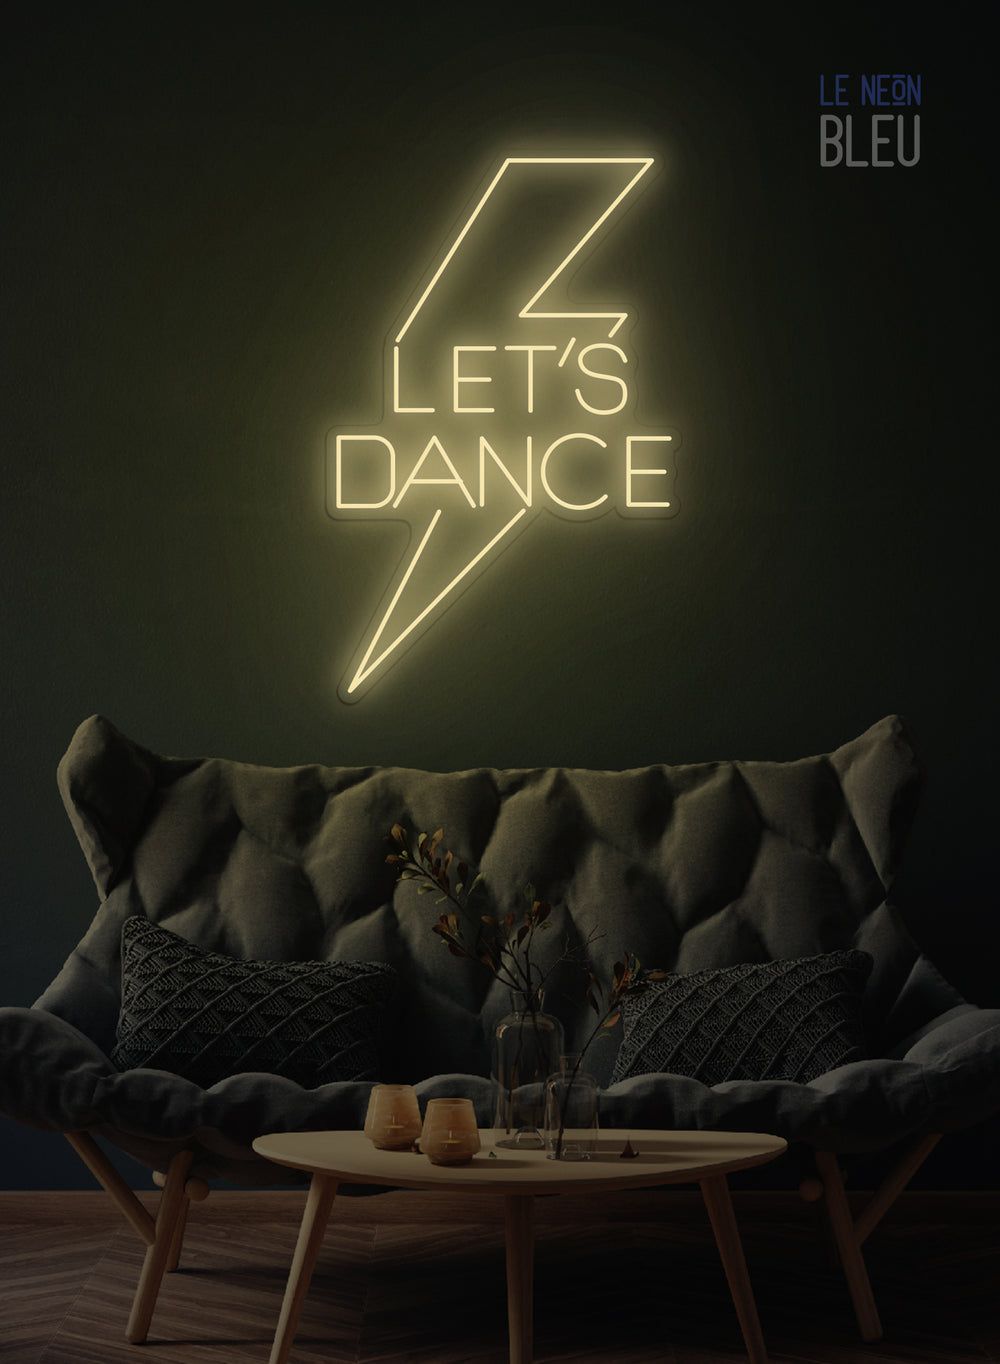 Let's Dance  - Néon LED